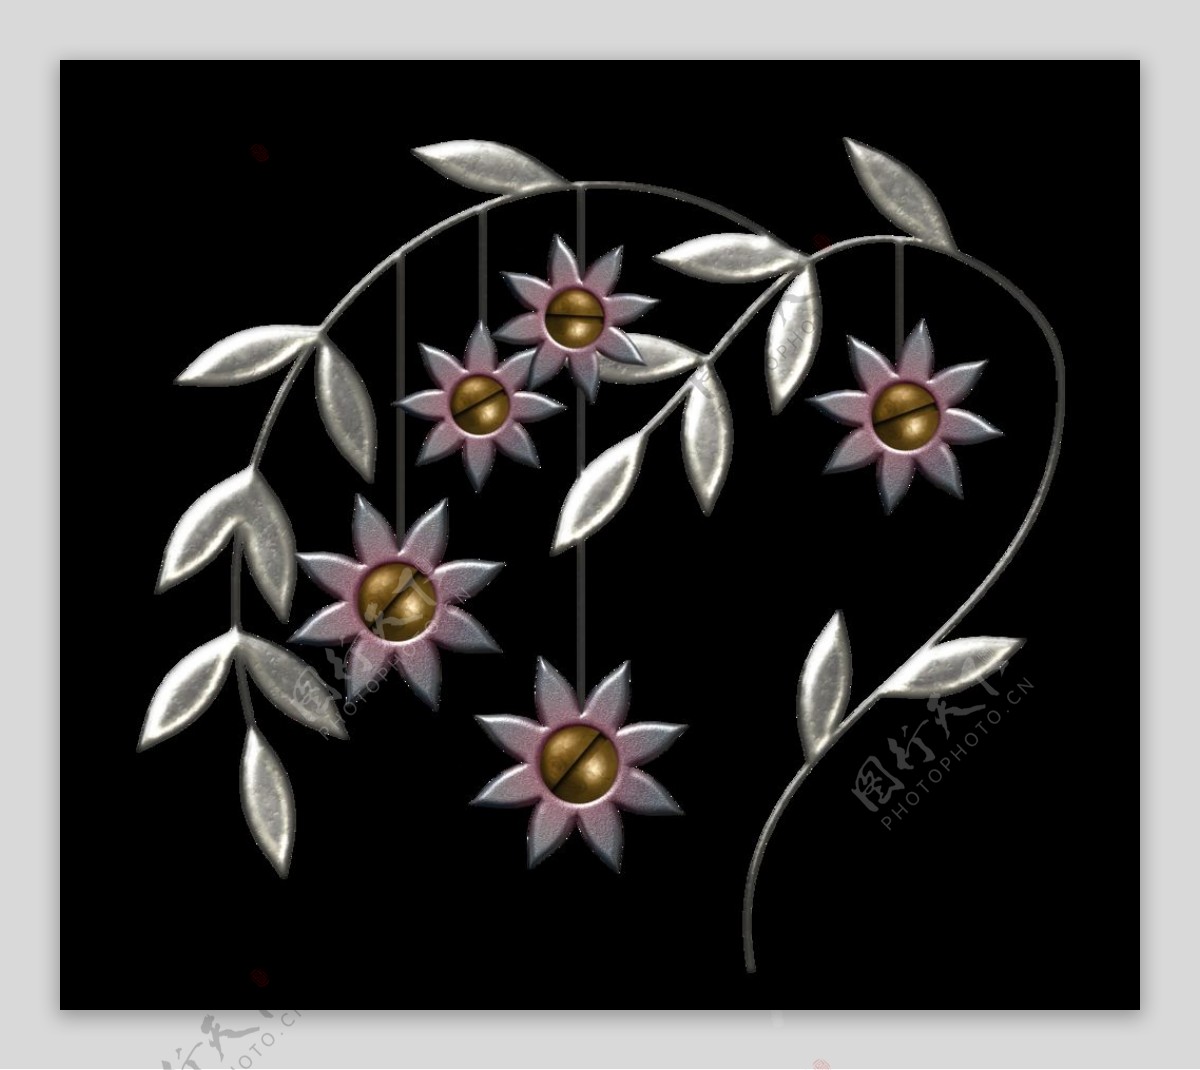 银色金属花朵设计素材图片